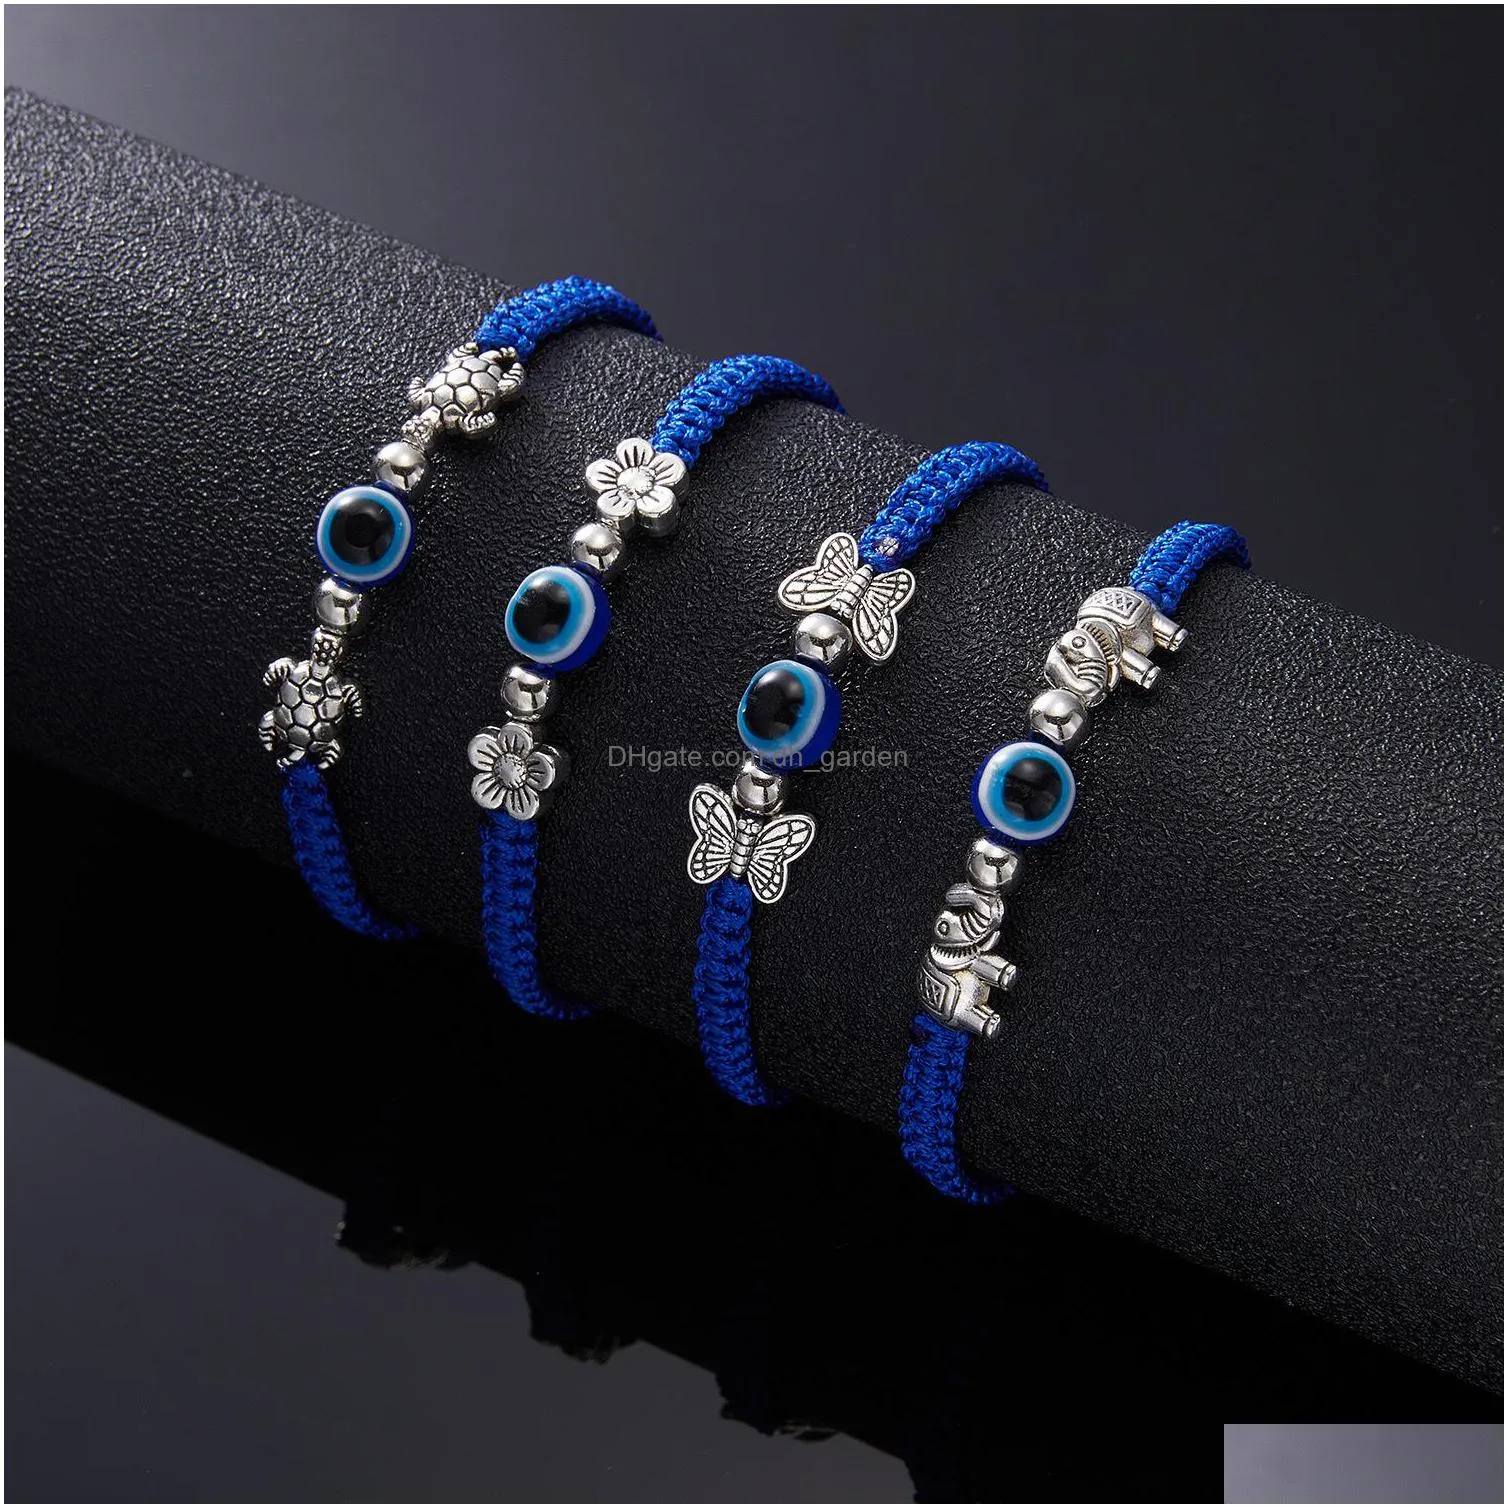 butterfly elephant blue evil eye red rope woven bracelets strands adjustable bracelet lucky bracelet